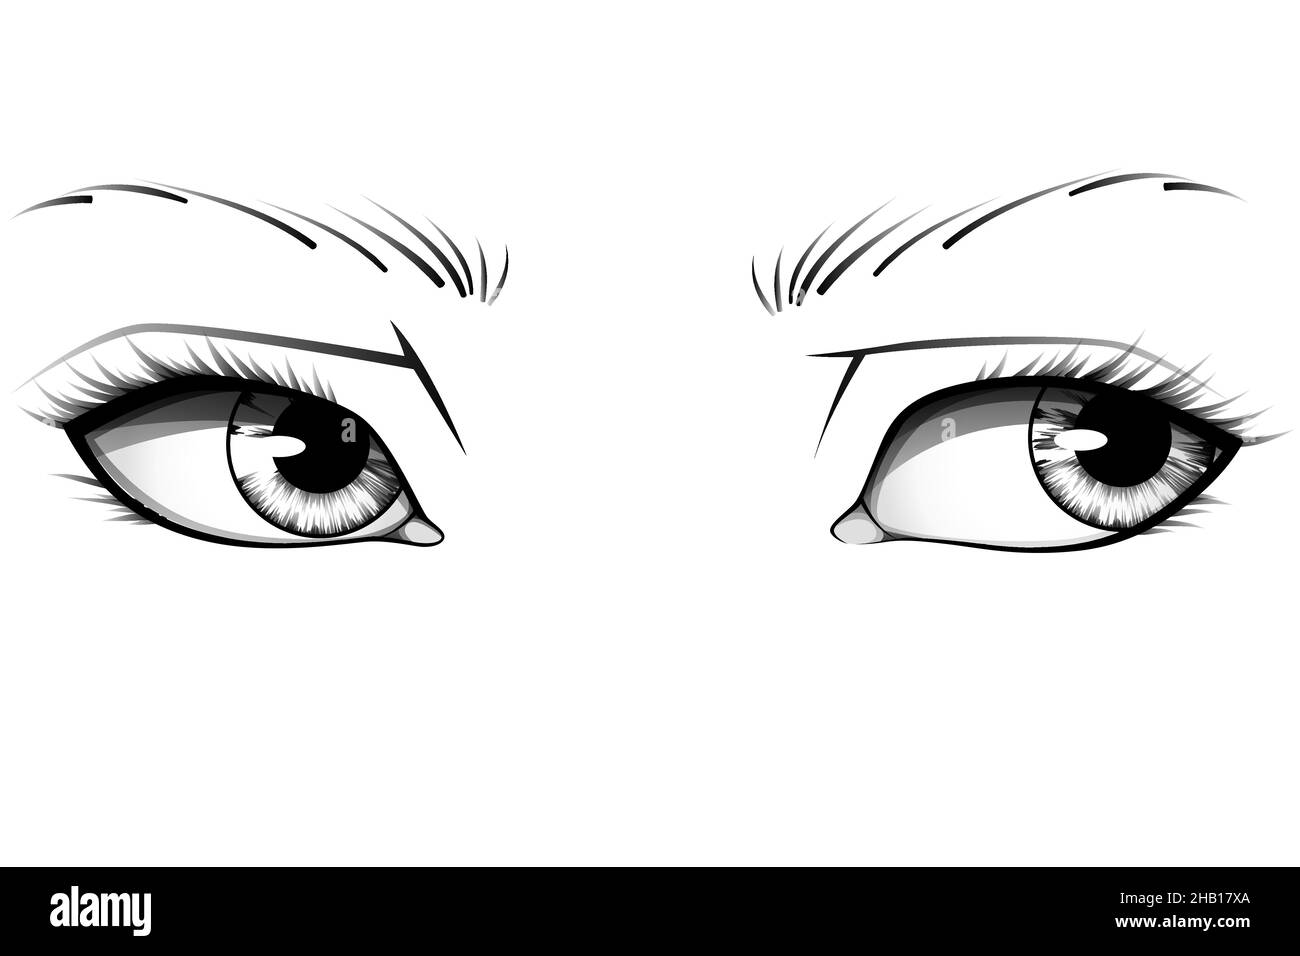 Les yeux de femme réalistes dessinés à la main avec des iris, des sourcils et des cils détaillés.Illustration de vecteur typographique Illustration de Vecteur